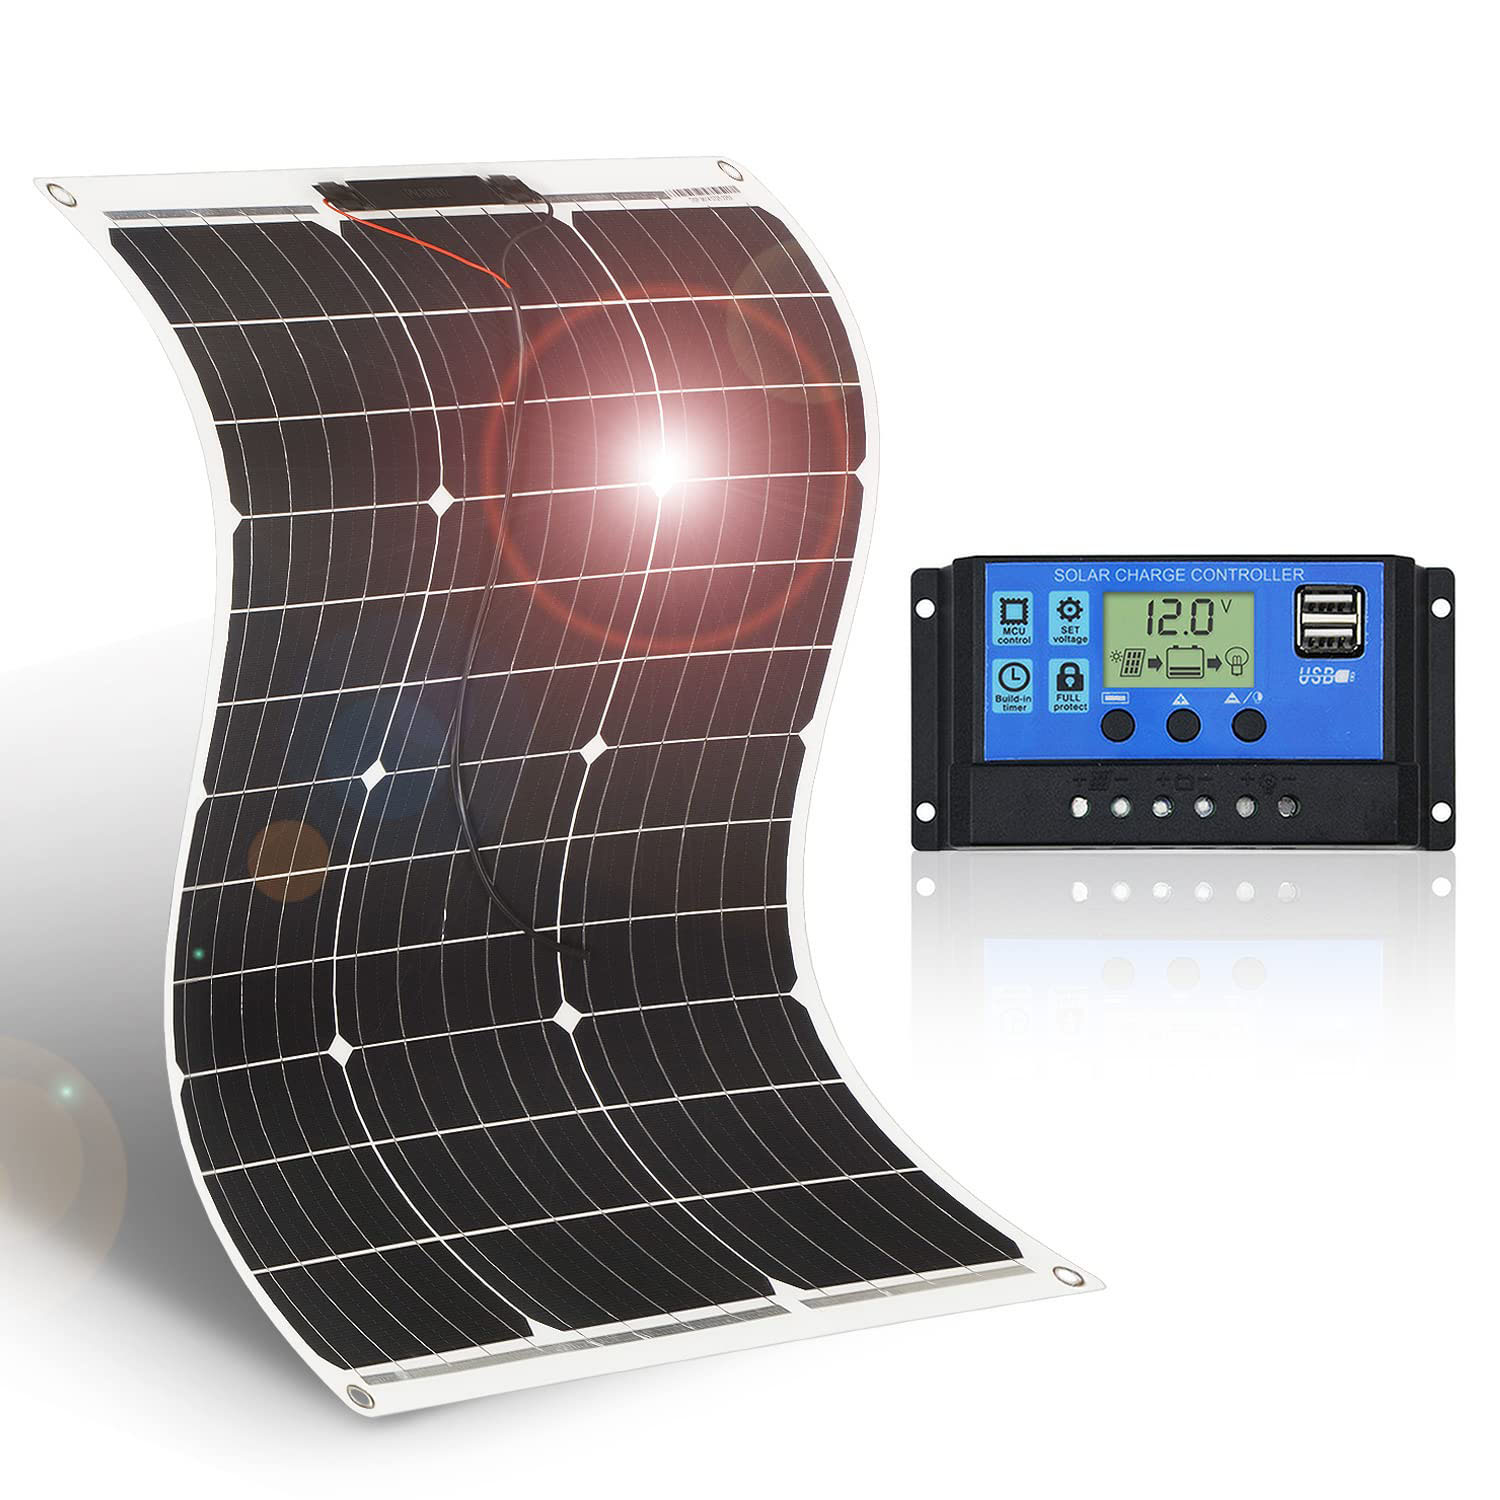 フレキシブル ソーラーパネル 50w 18v 単結晶 600g超軽量 2mm極薄 自作のソーラー発電に最適な小型 家庭用太陽光パネル 12v バッテリー充電用 ソーラーパネルセット